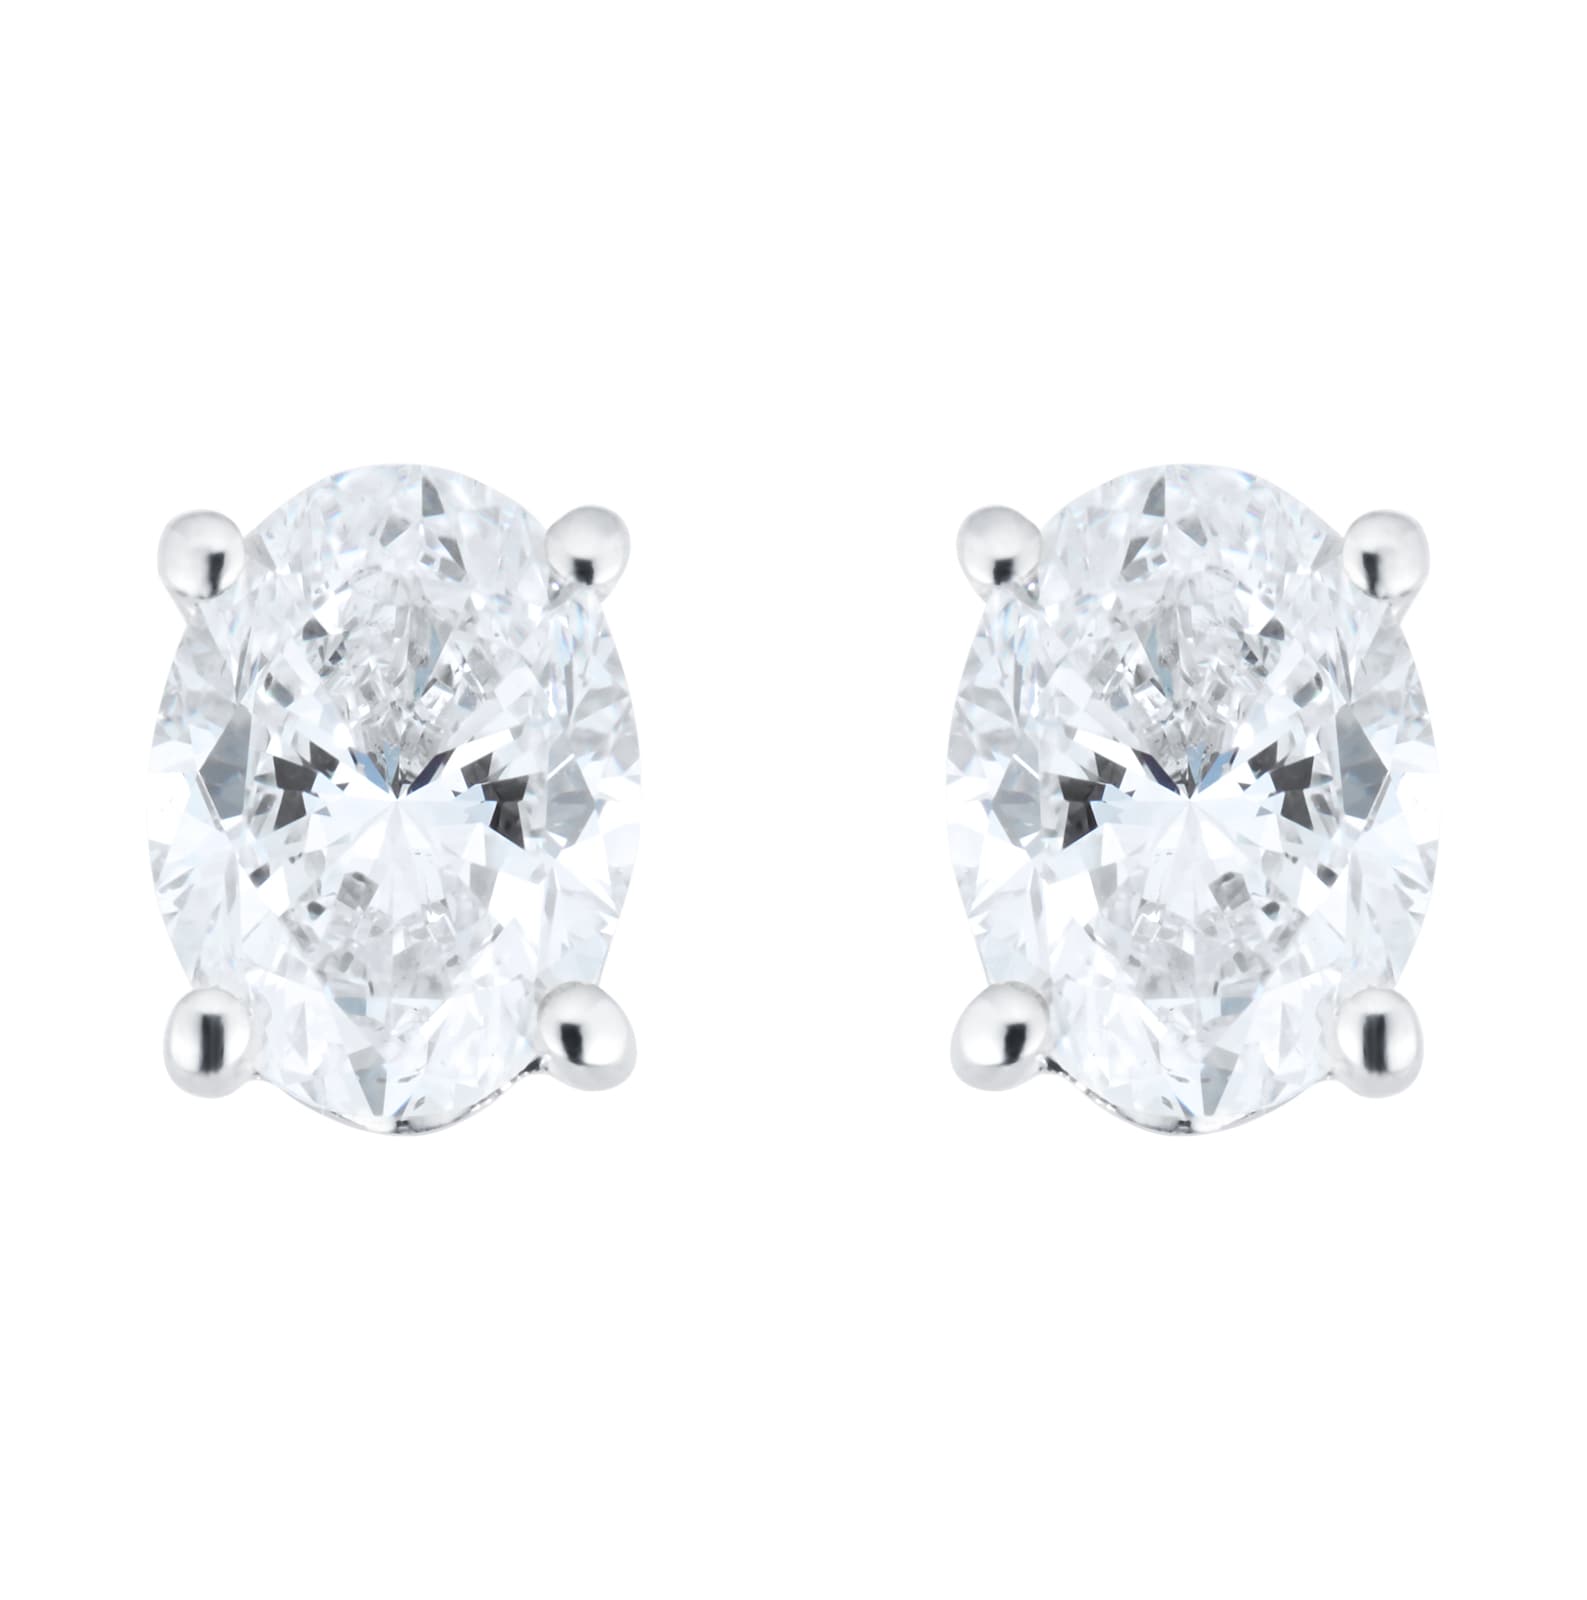 Platinum 2.00cttw Oval Cut Diamond Stud Earrings